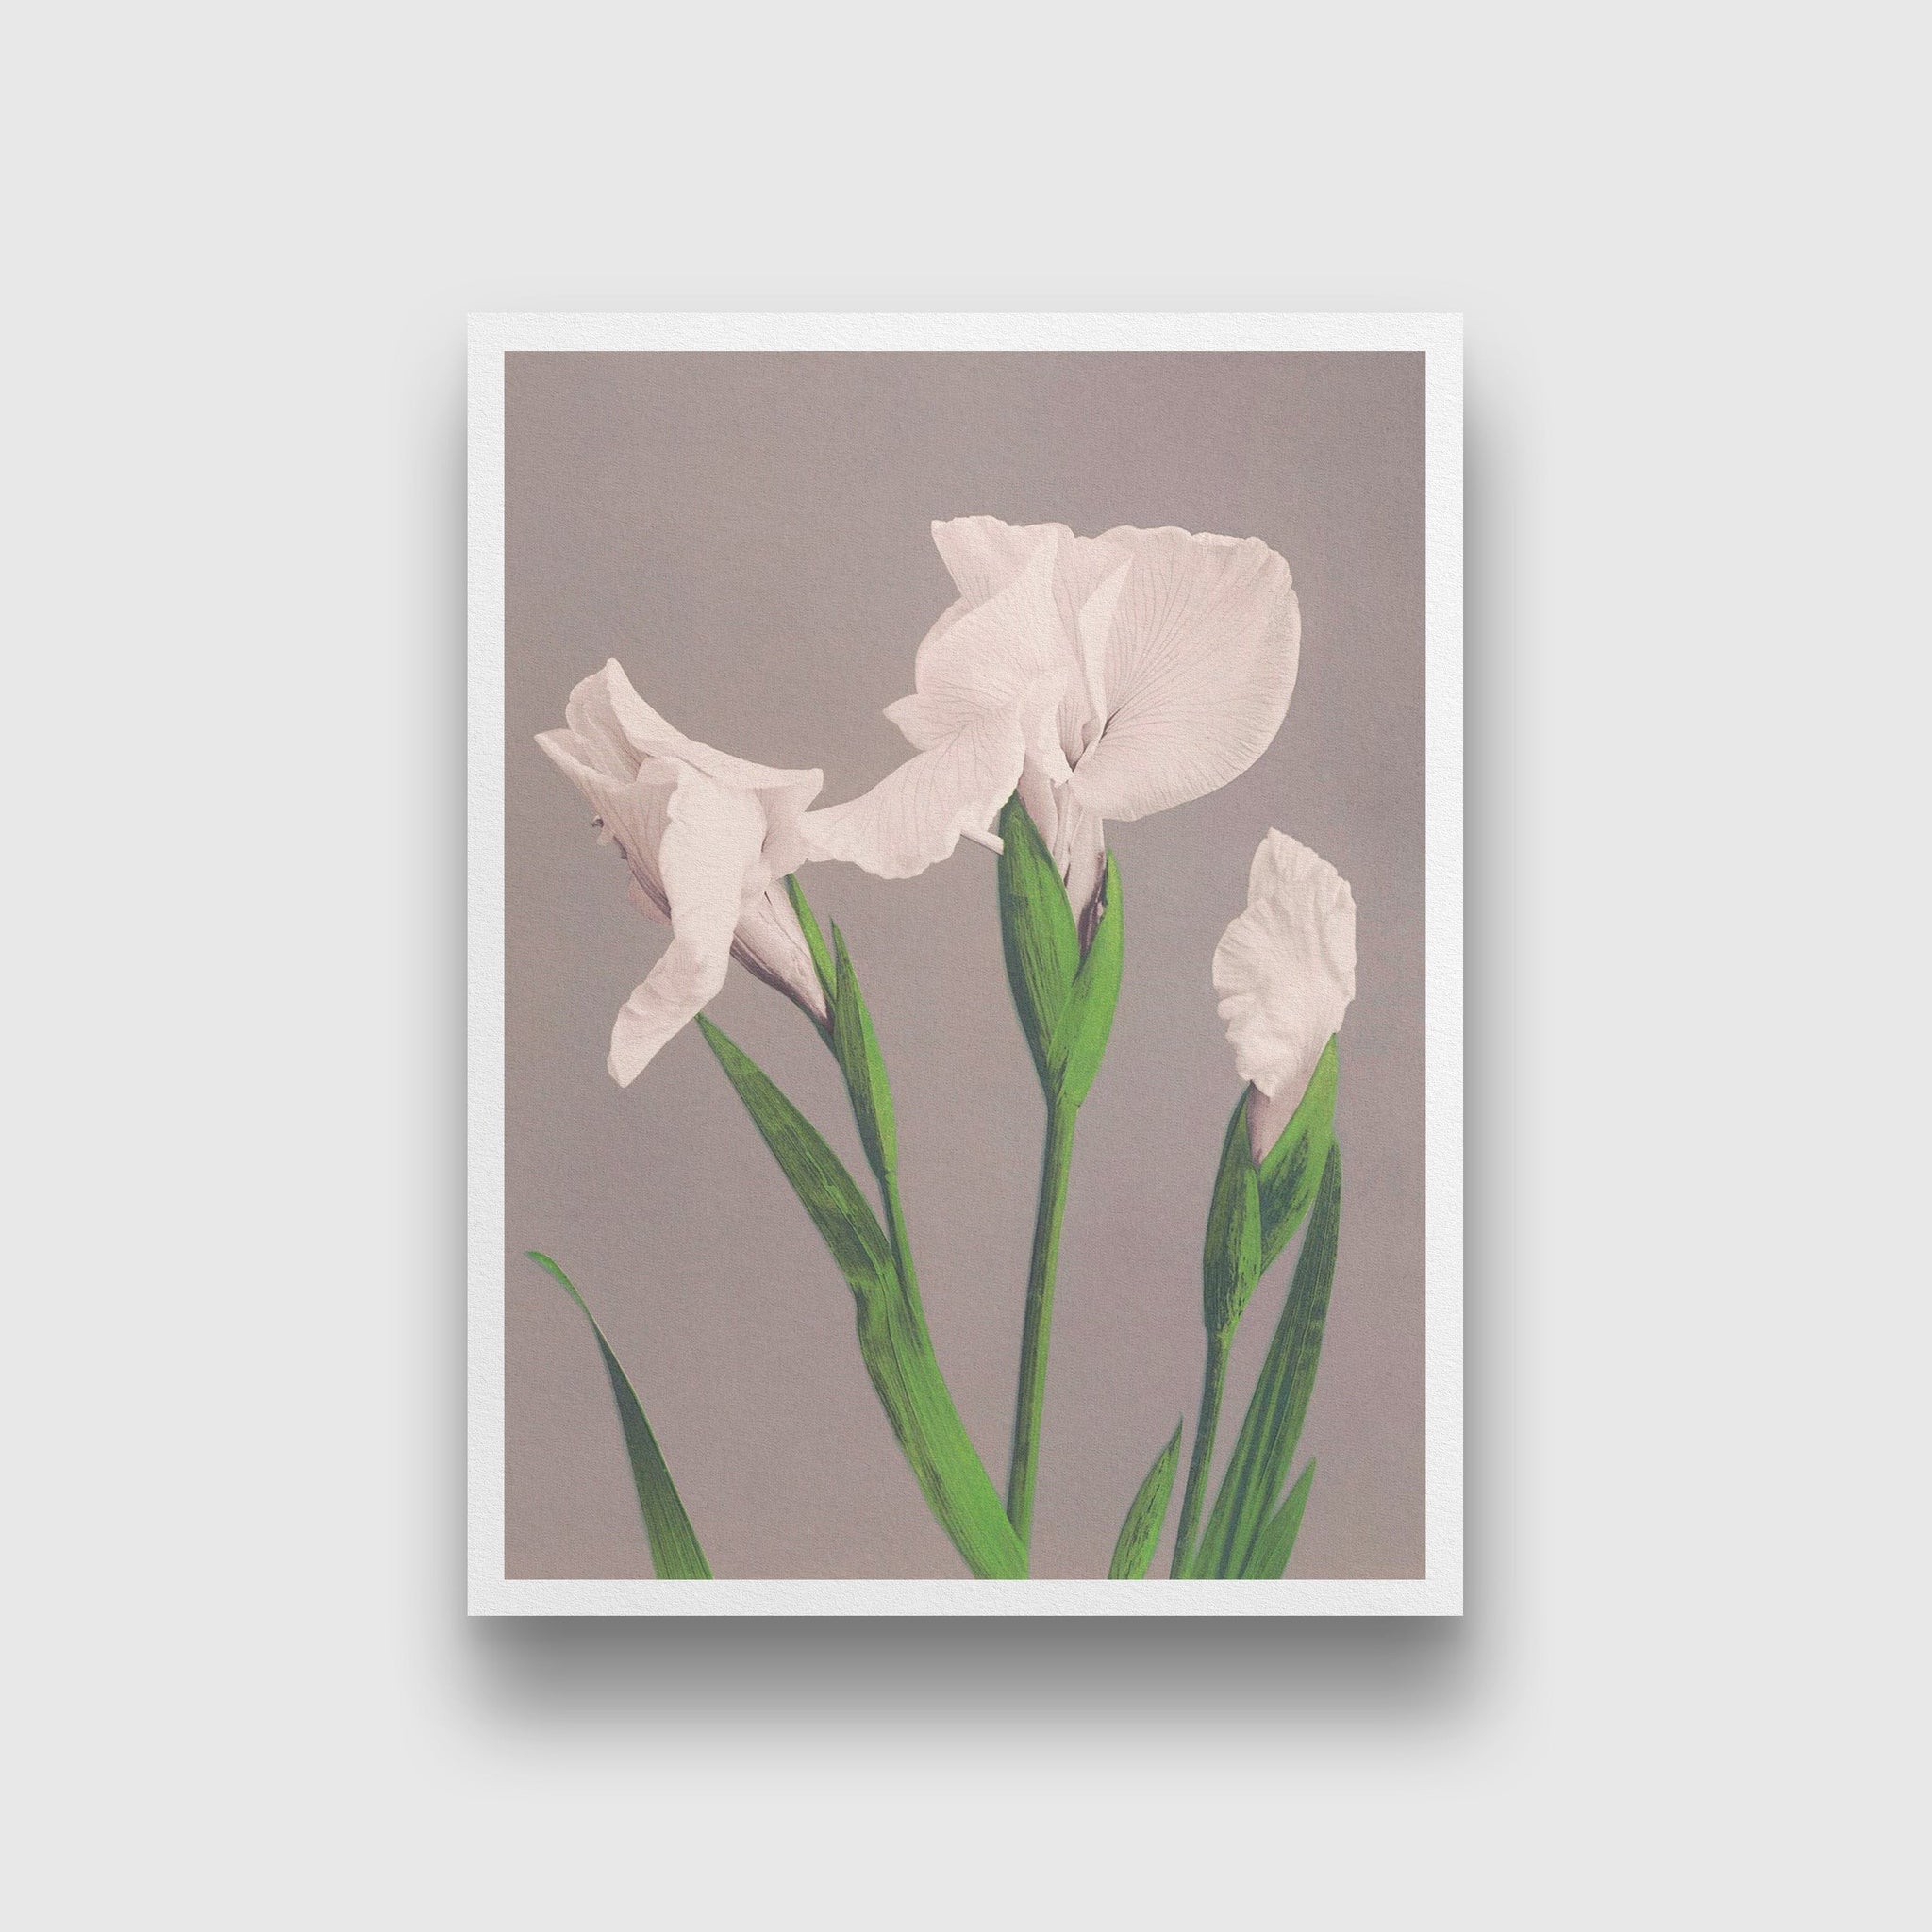 White Irises painting